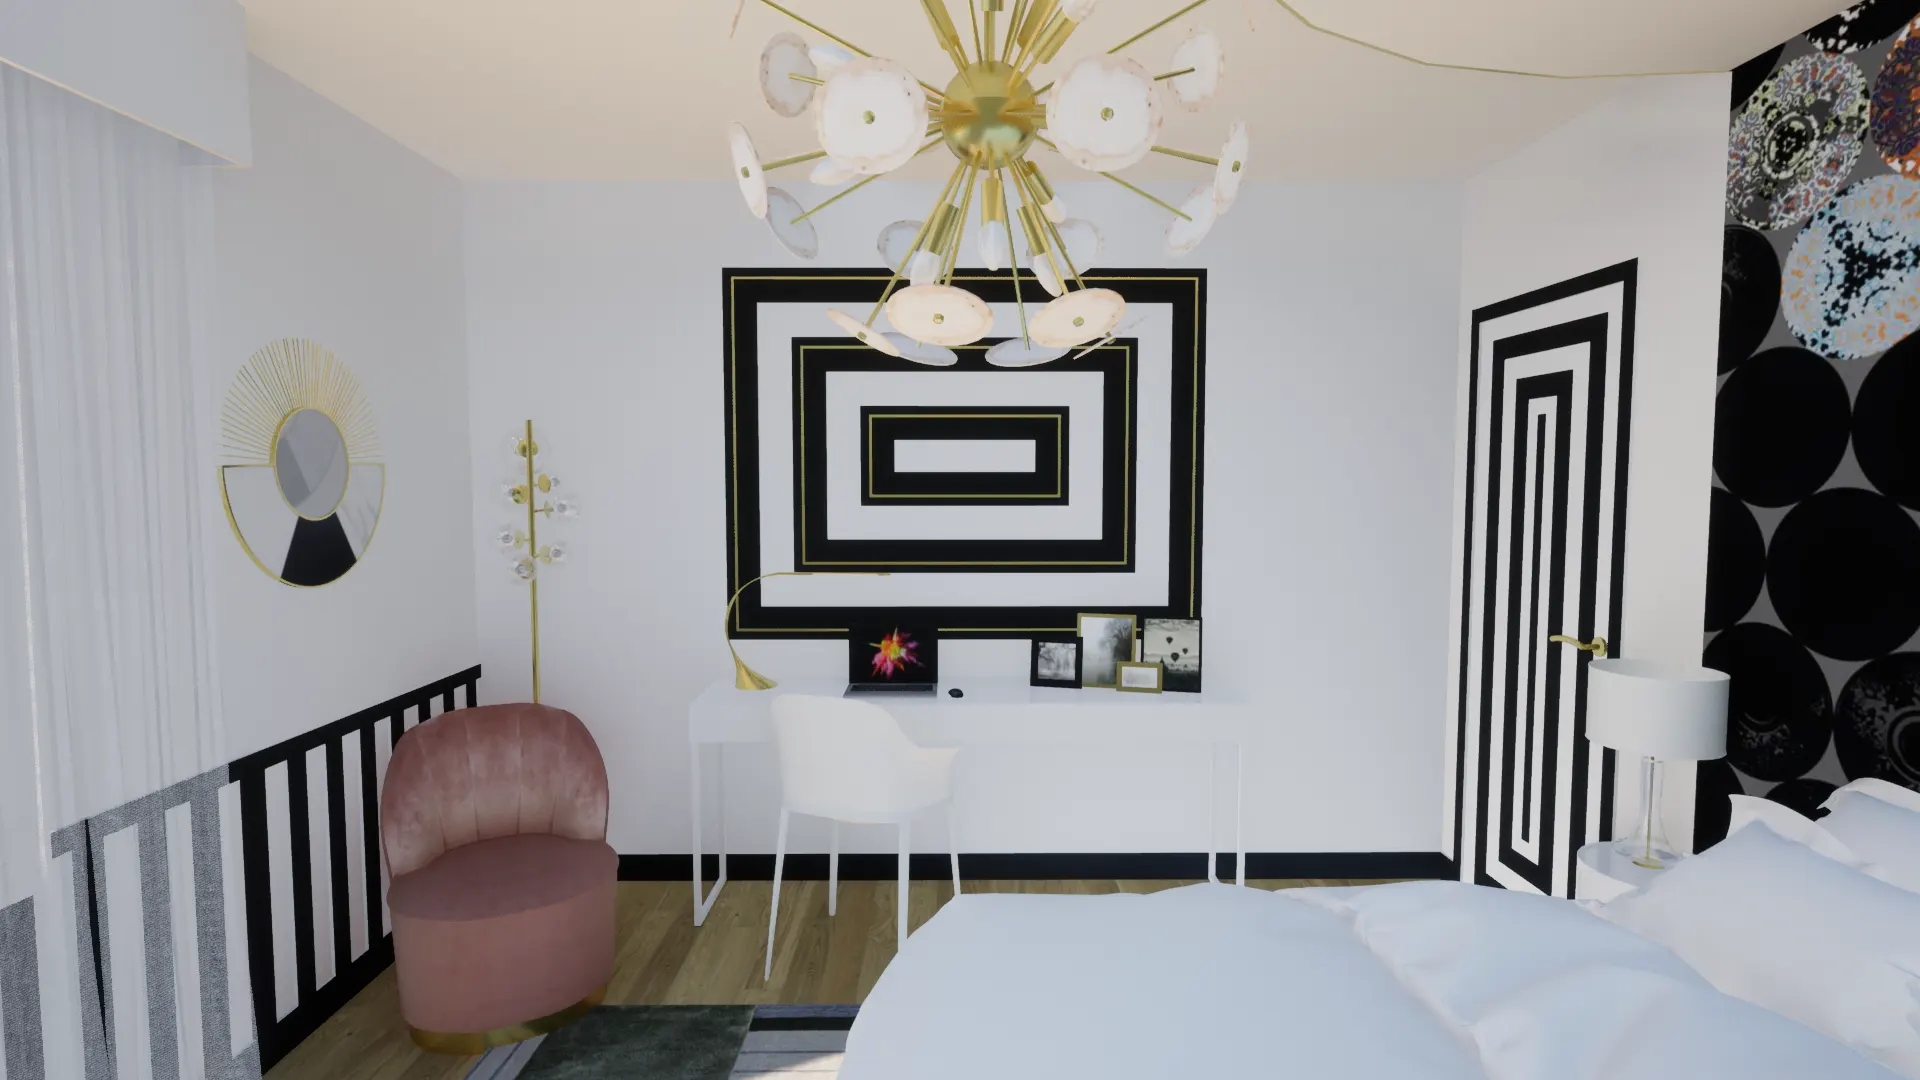 Appartement neuf | Chambre de Louise - décor muraux réalisé en peinture création Agence B Interior